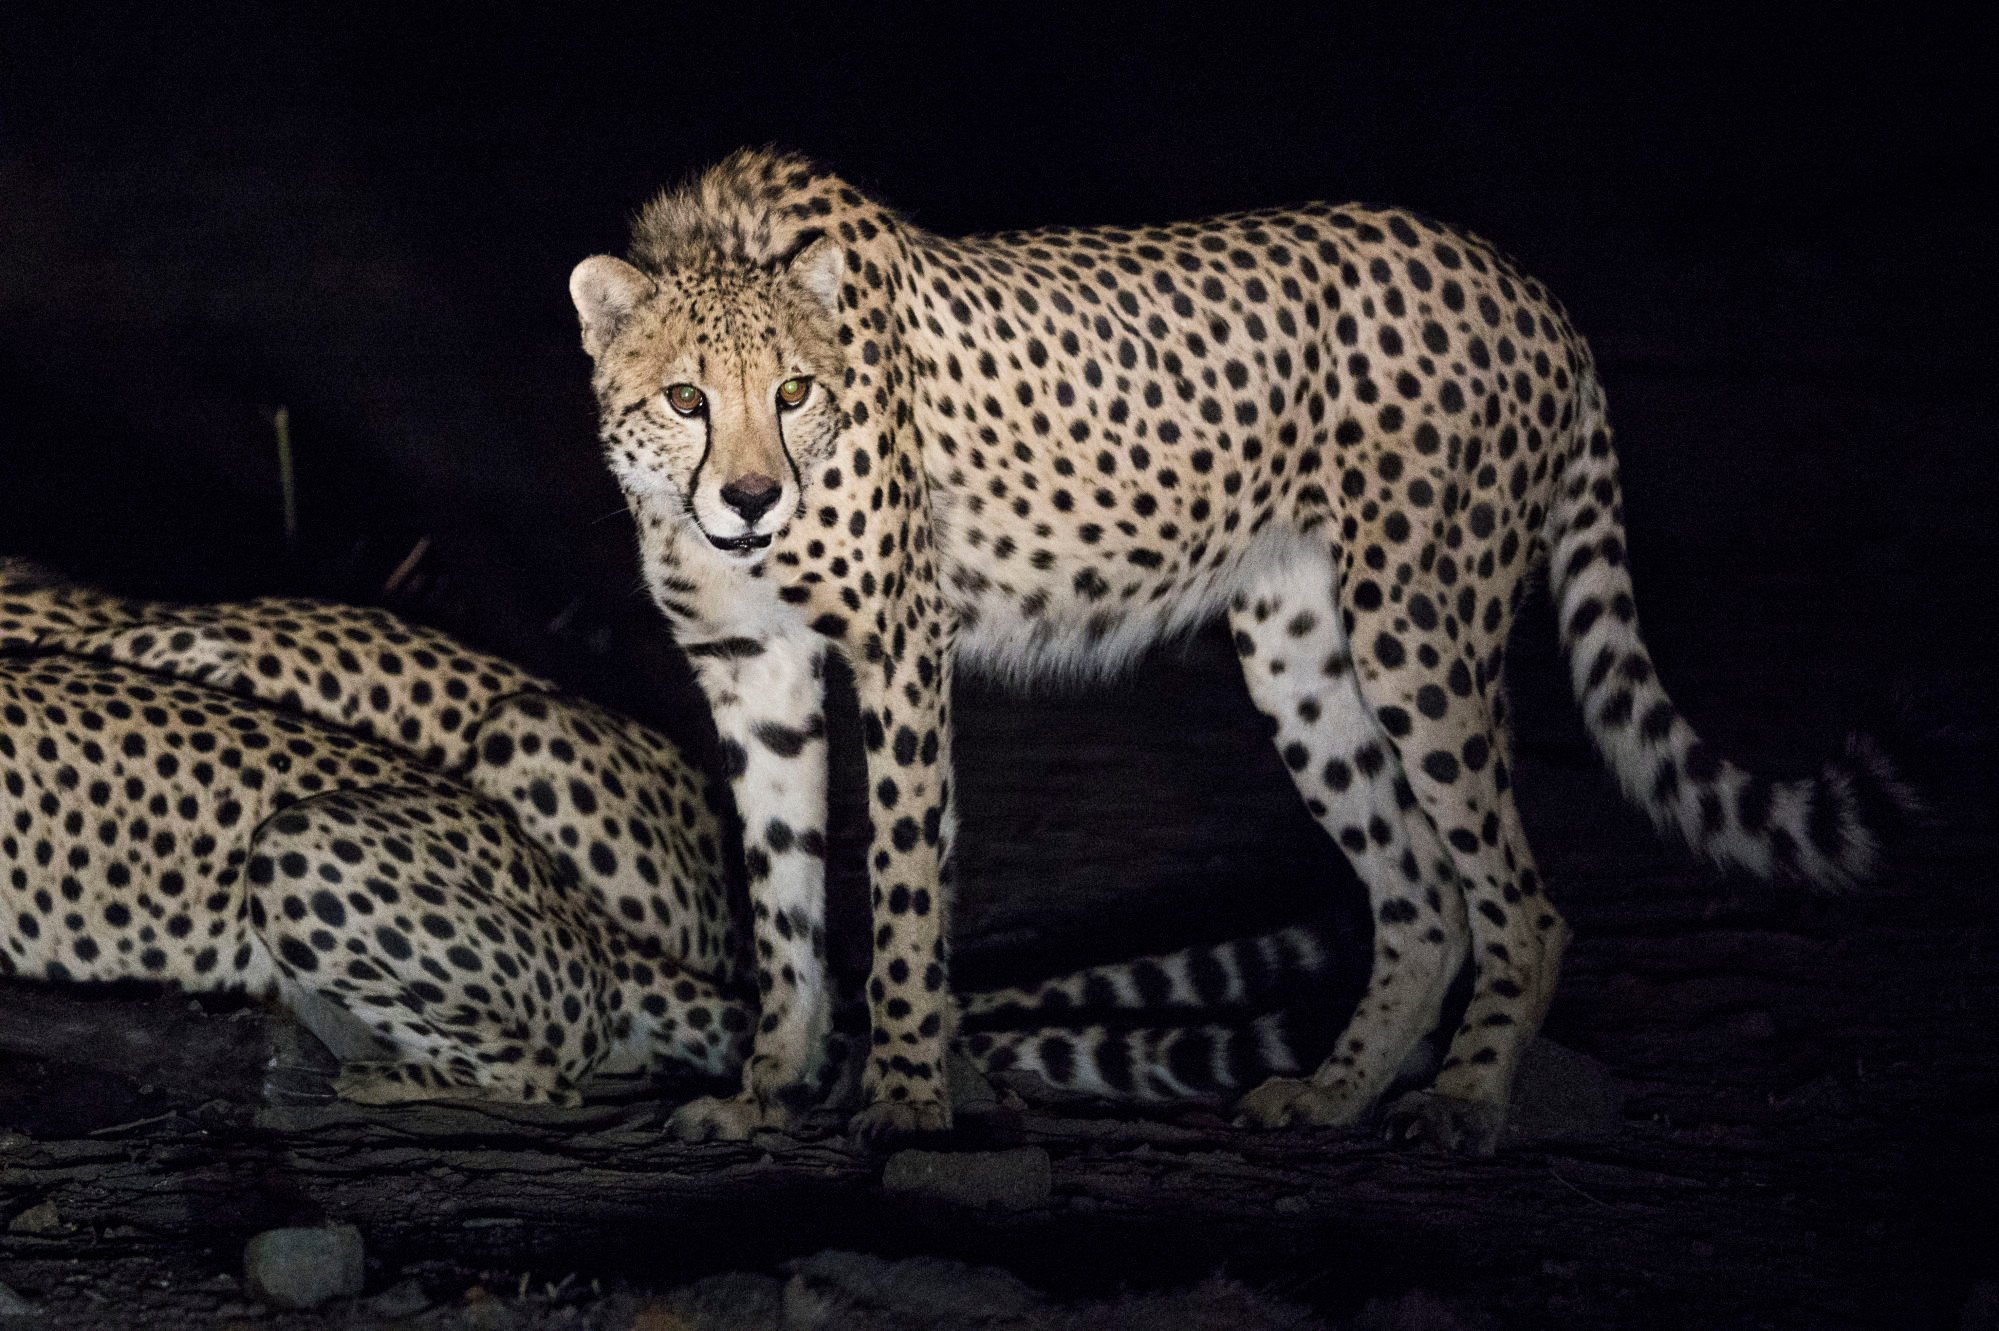 Cheetahs were released into Liwonde in 2017. Photo: Daniel Allen